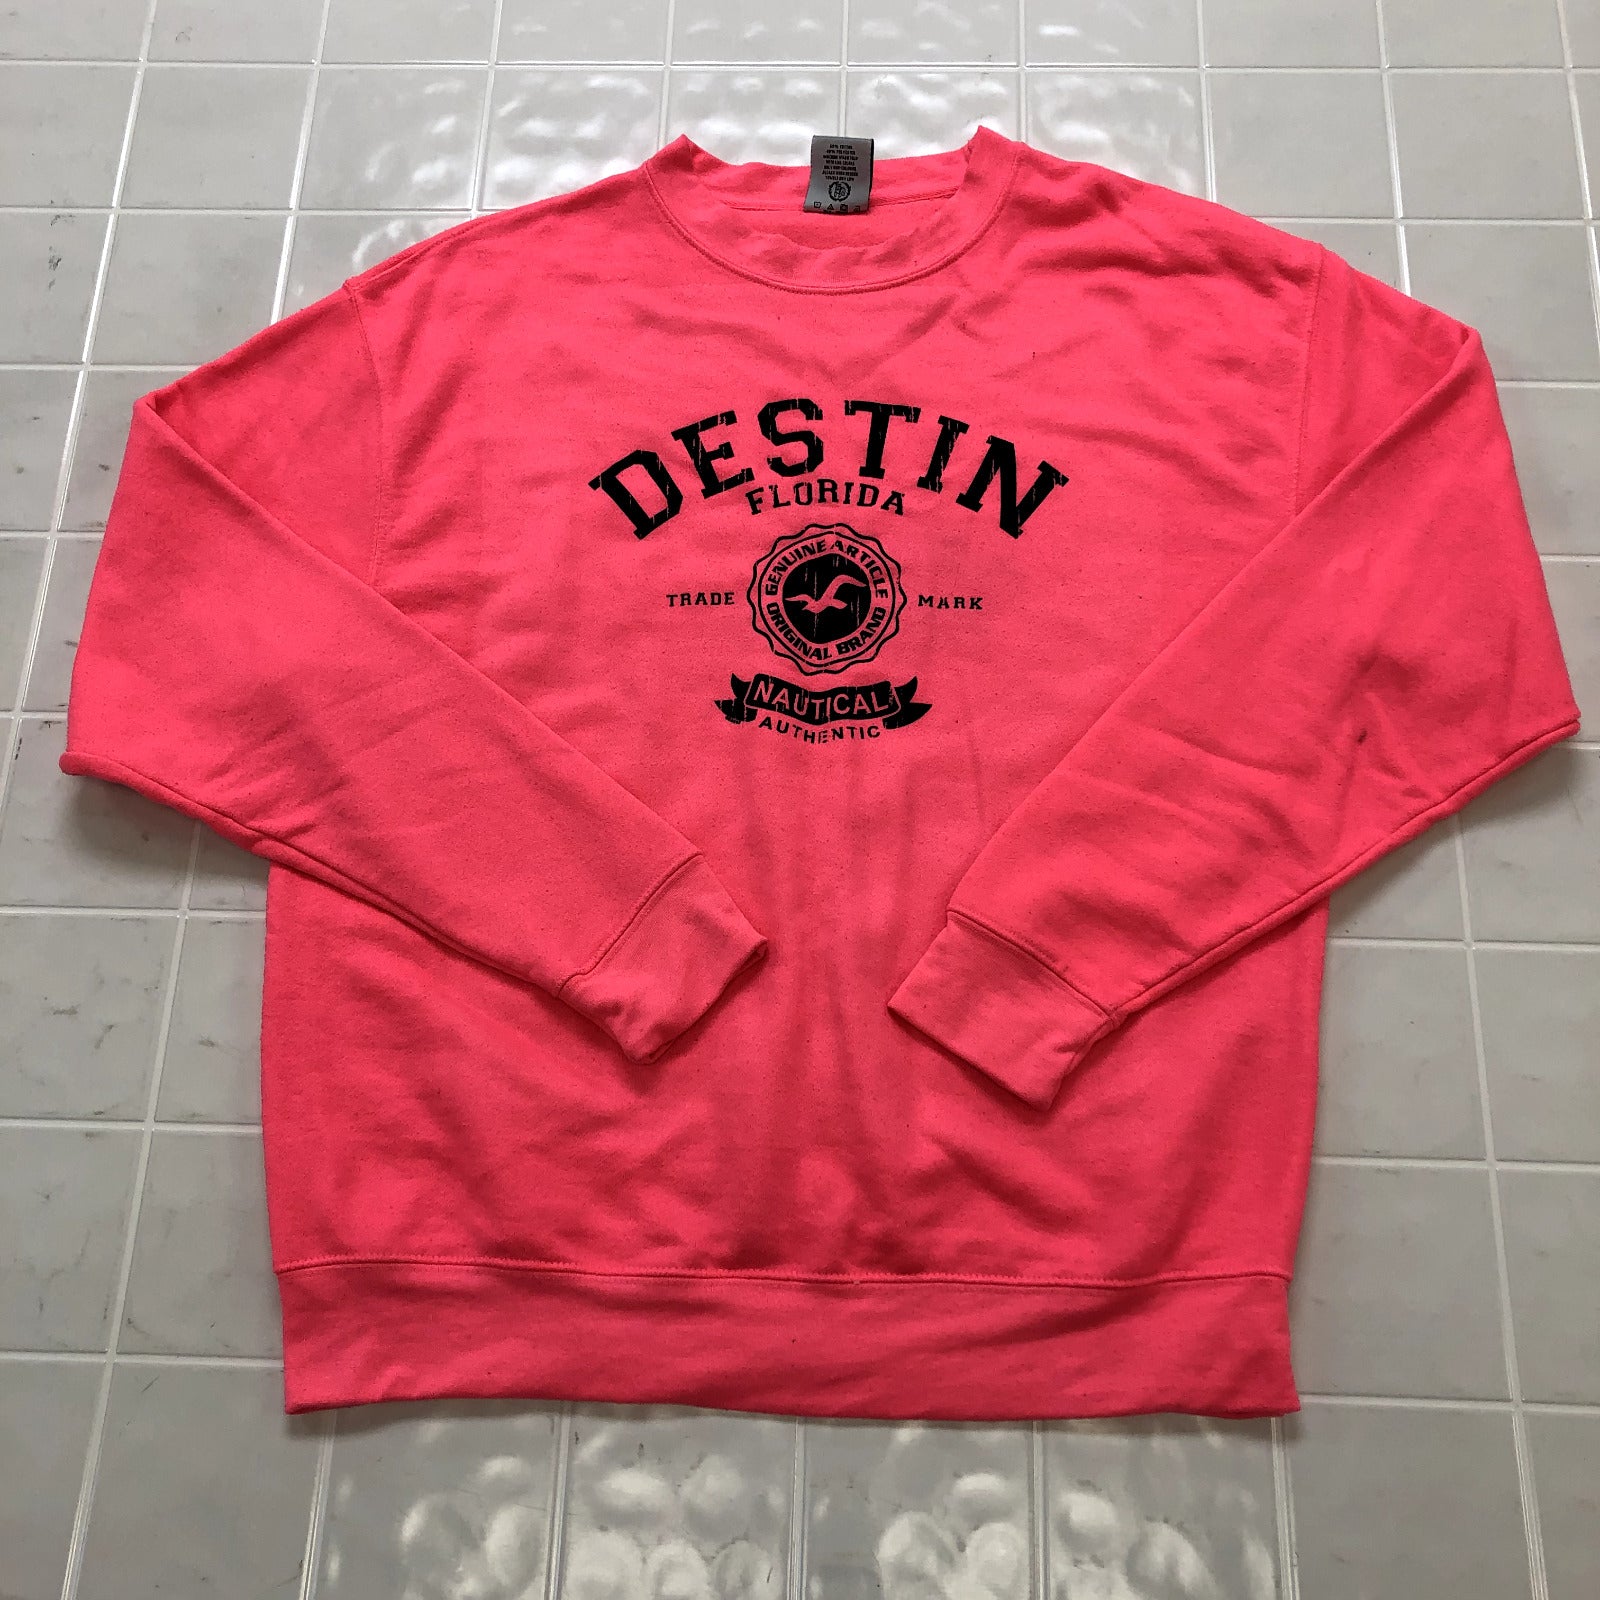 Exist Pink Graphic Destin Florida Nautical Authentic Sweatshirt Women's Size L